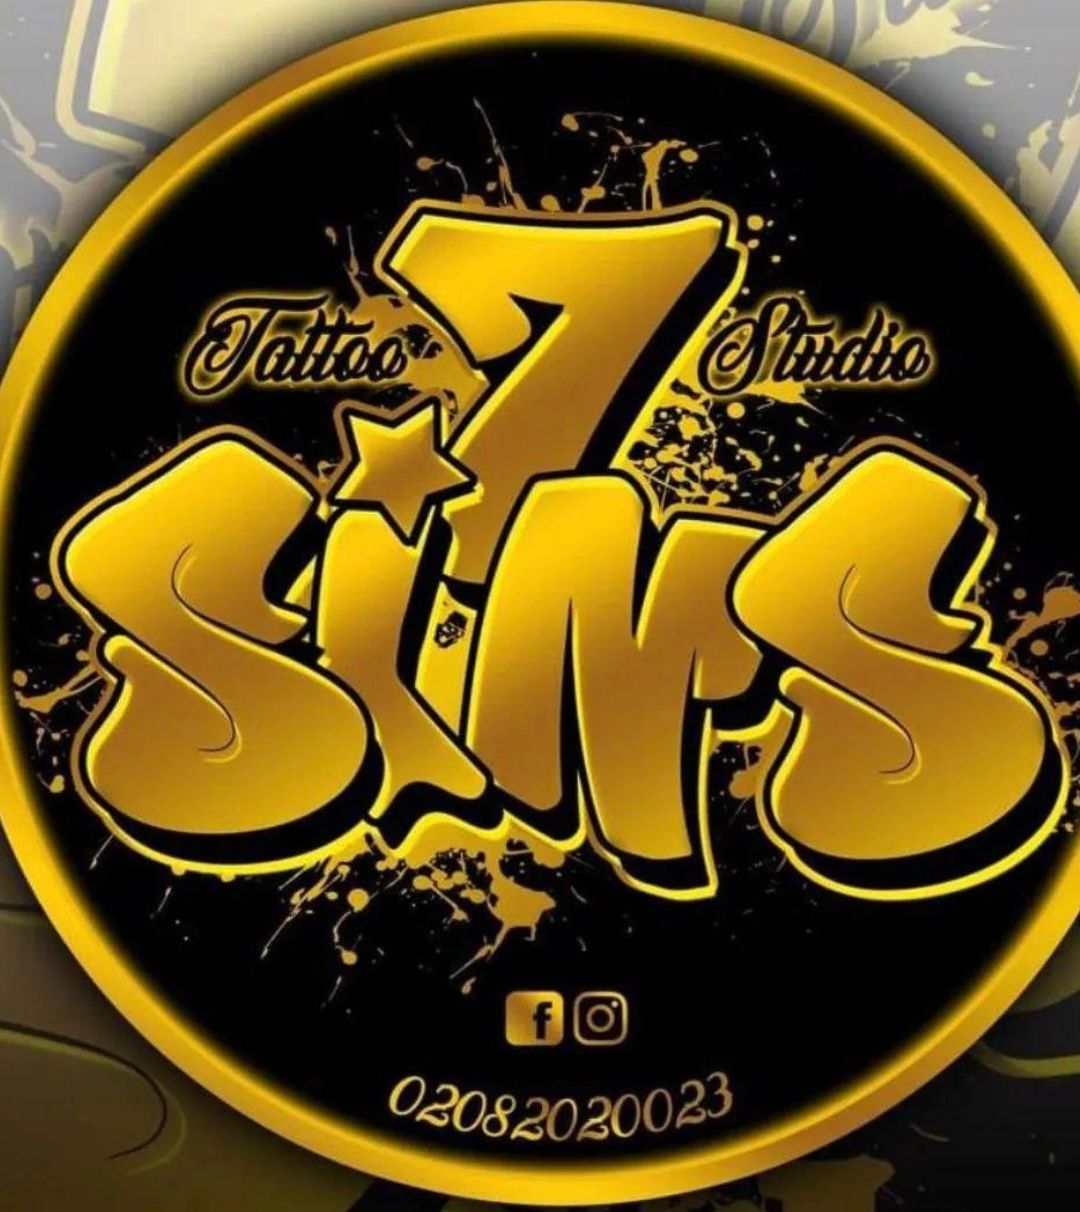 7 sins tattoo studio